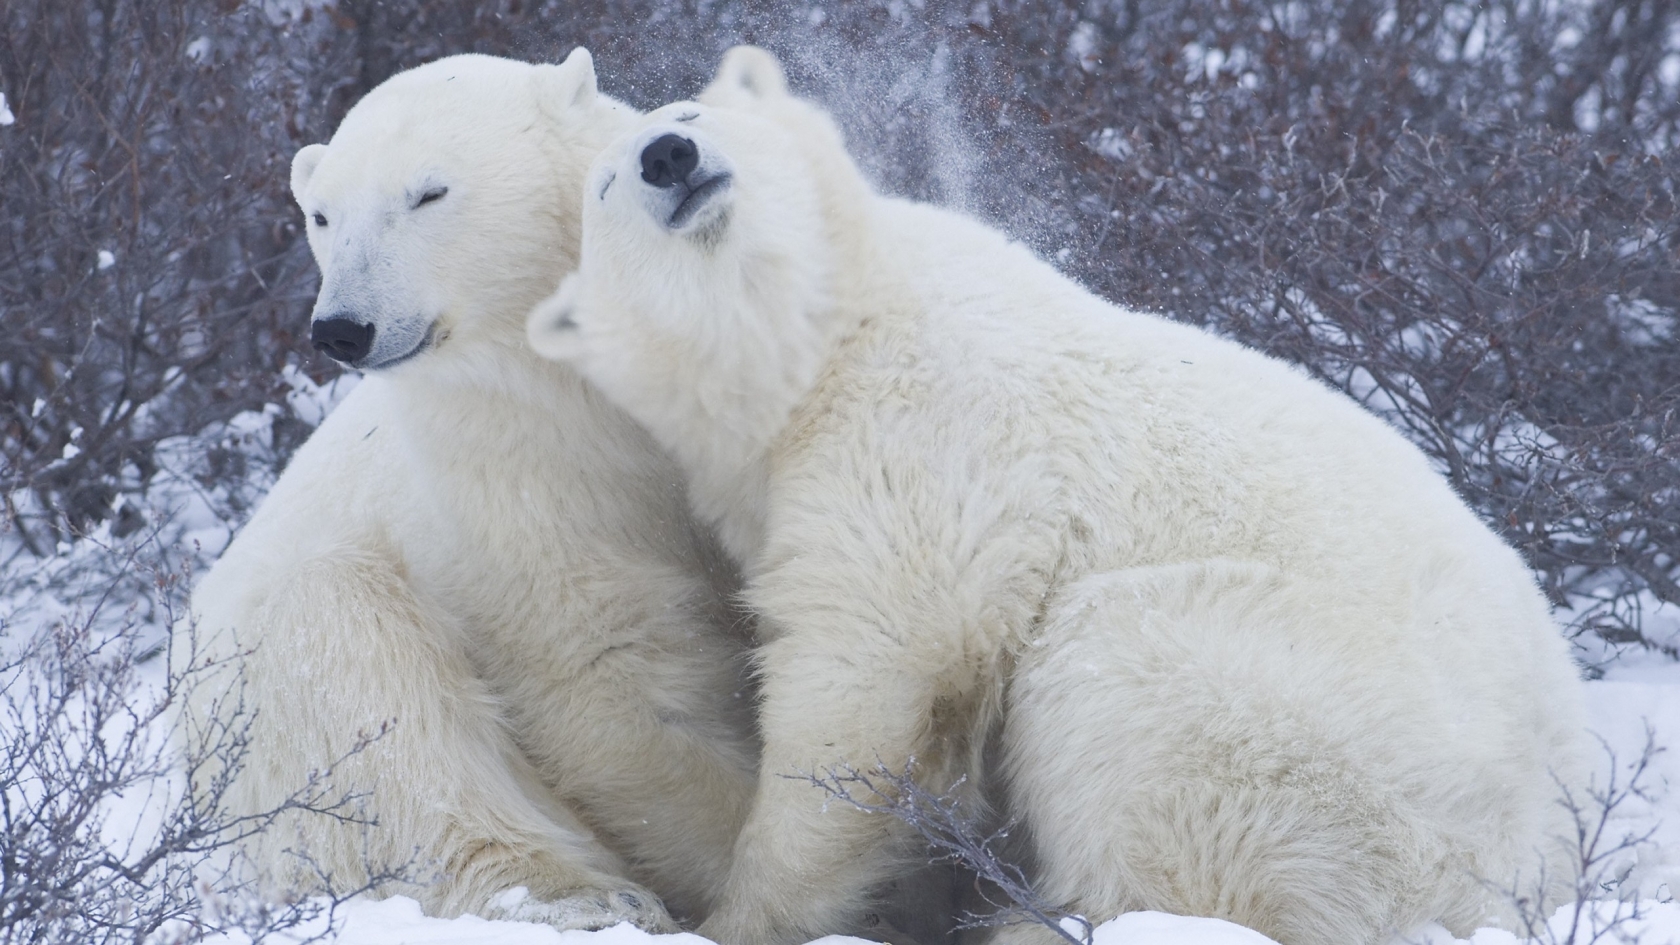 Cute Polar Bears for 1680 x 945 HDTV resolution